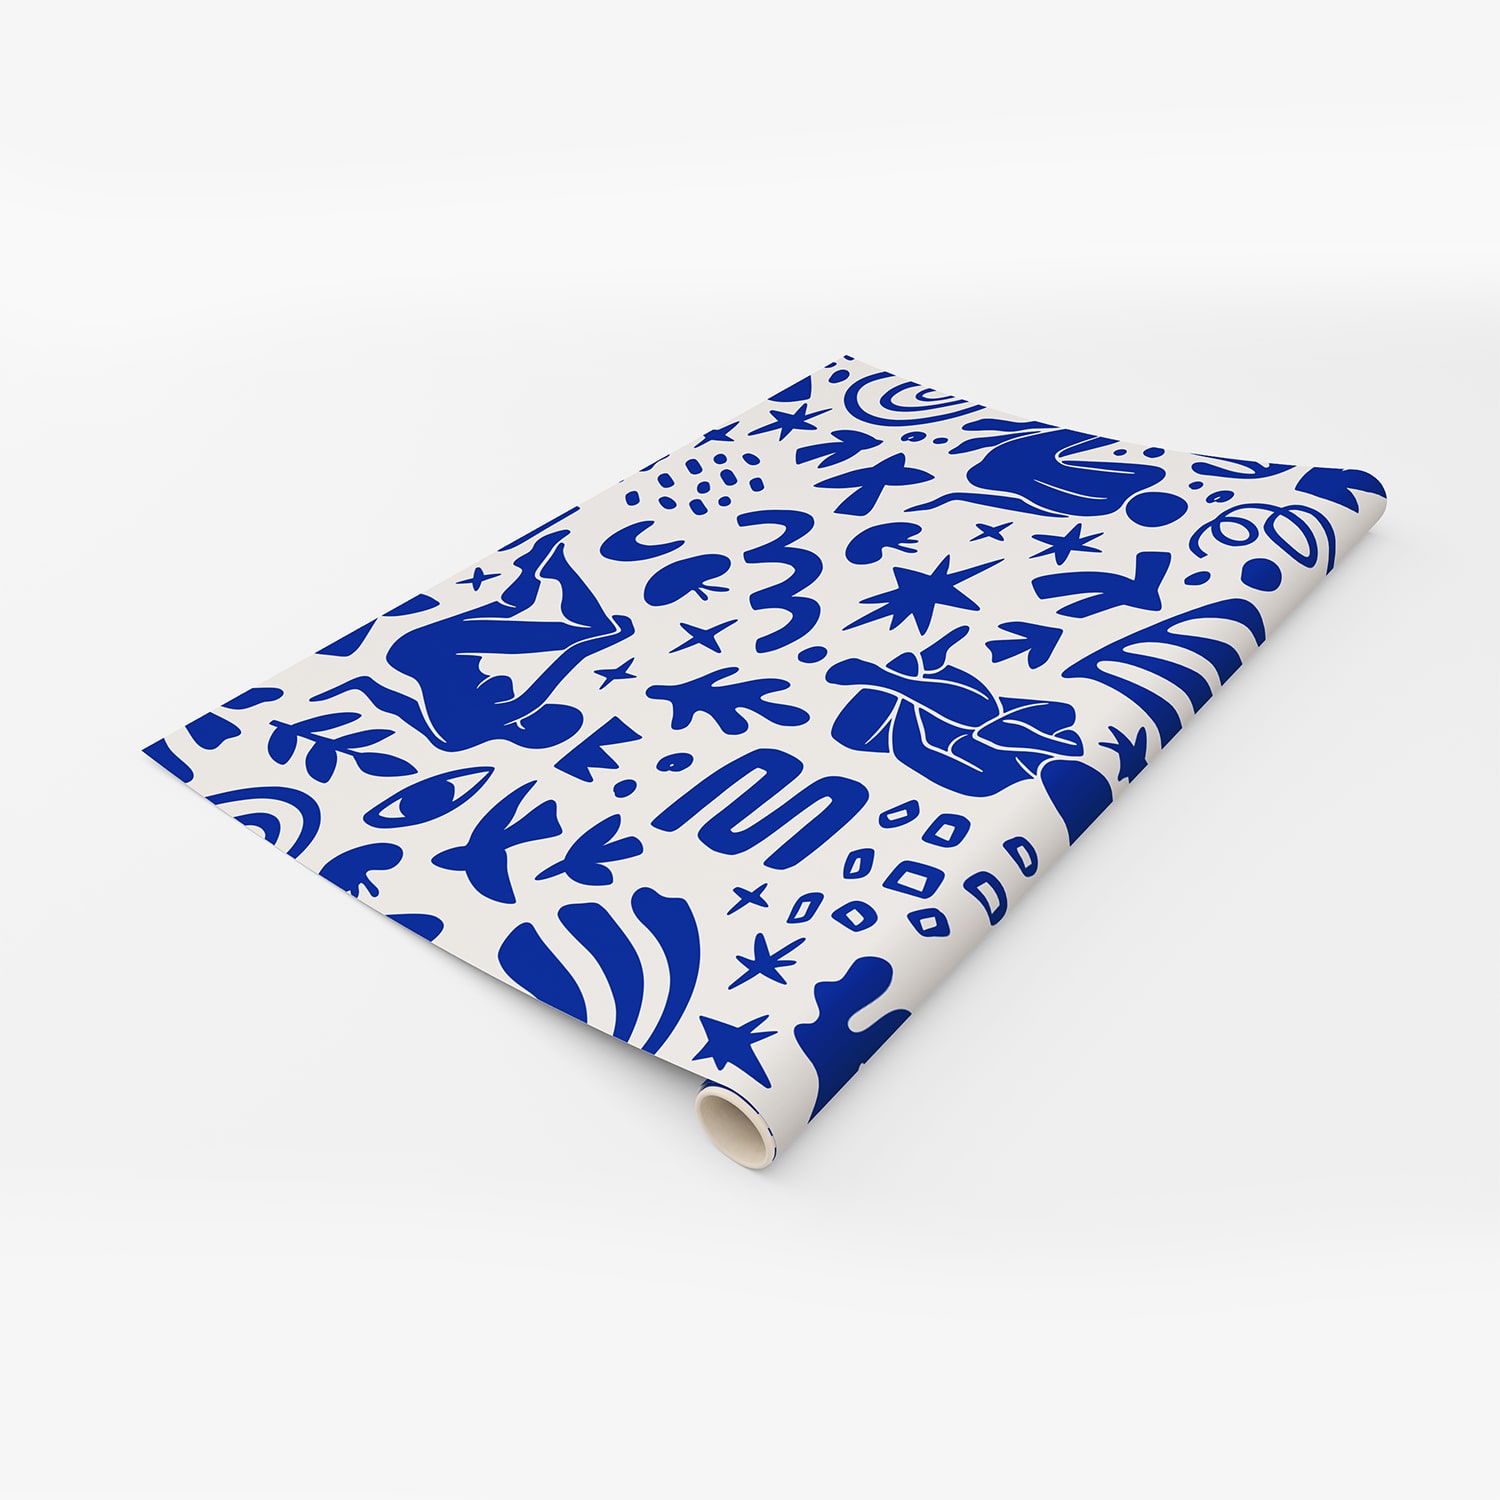 PP98-rouleau-papier-peint-adhesif-decoratif-revetement-vinyle-motifs-inspiré-style-Matisse-féminin-renovation-meuble-mur-min